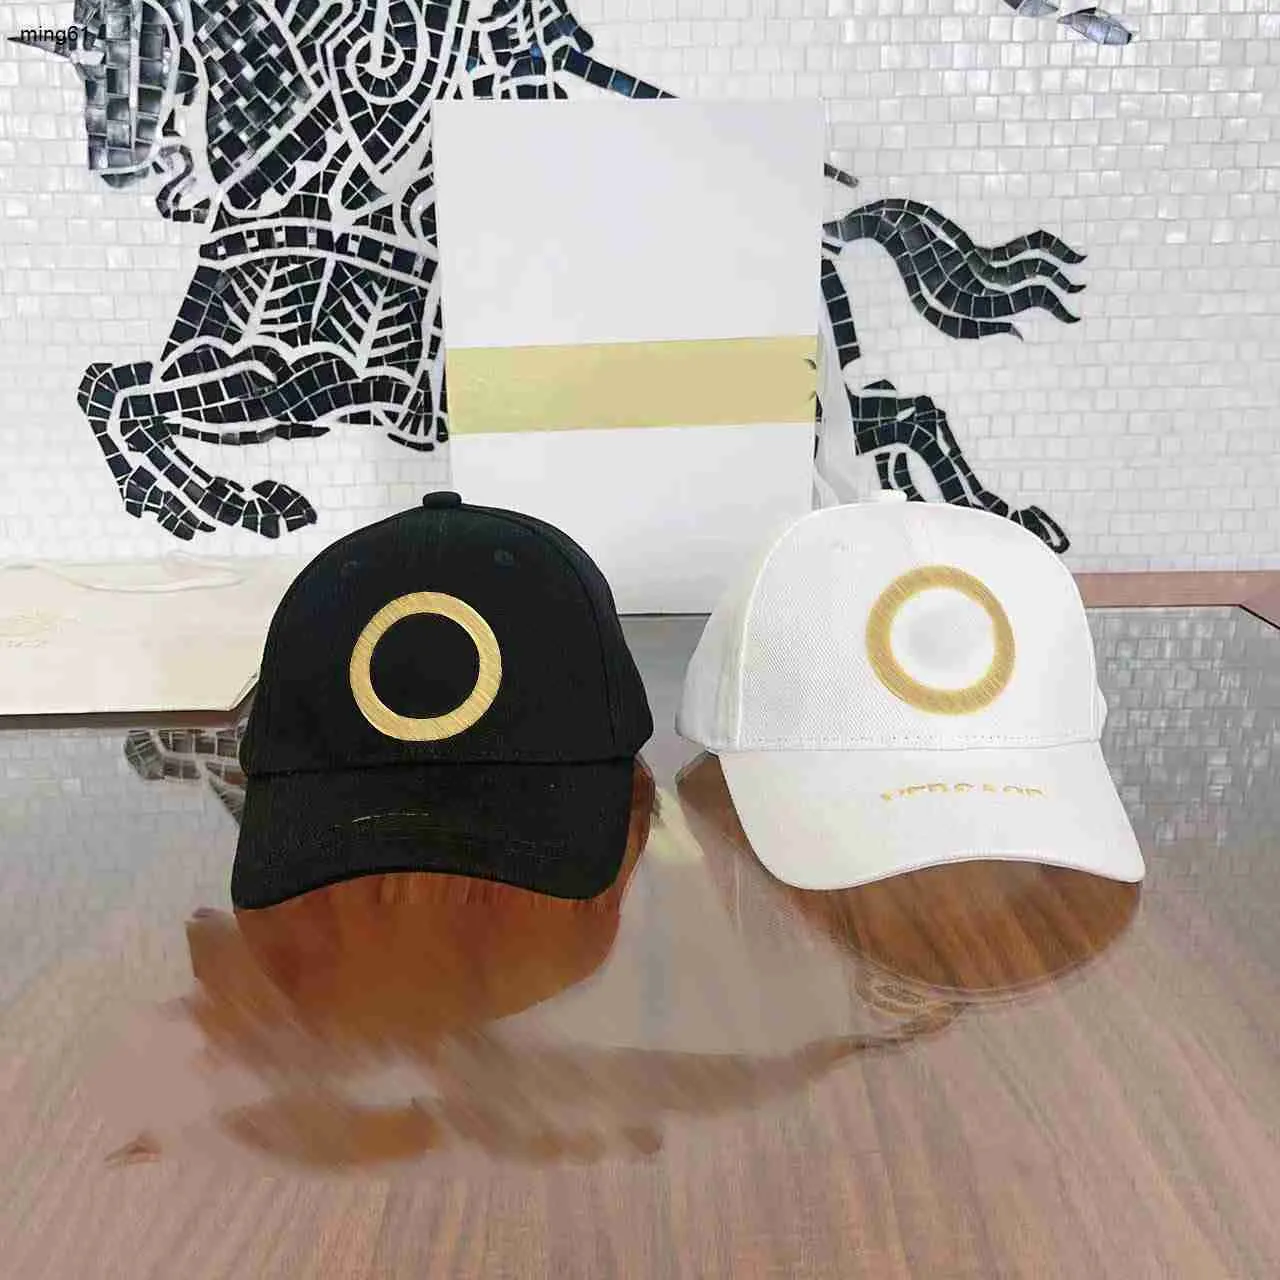 Marka dzieci designerskie czapki złoto haft haft dziecięcy słone rozmiar 3-12 pudełka opakowanie dziewczęta chłopcy cap kul